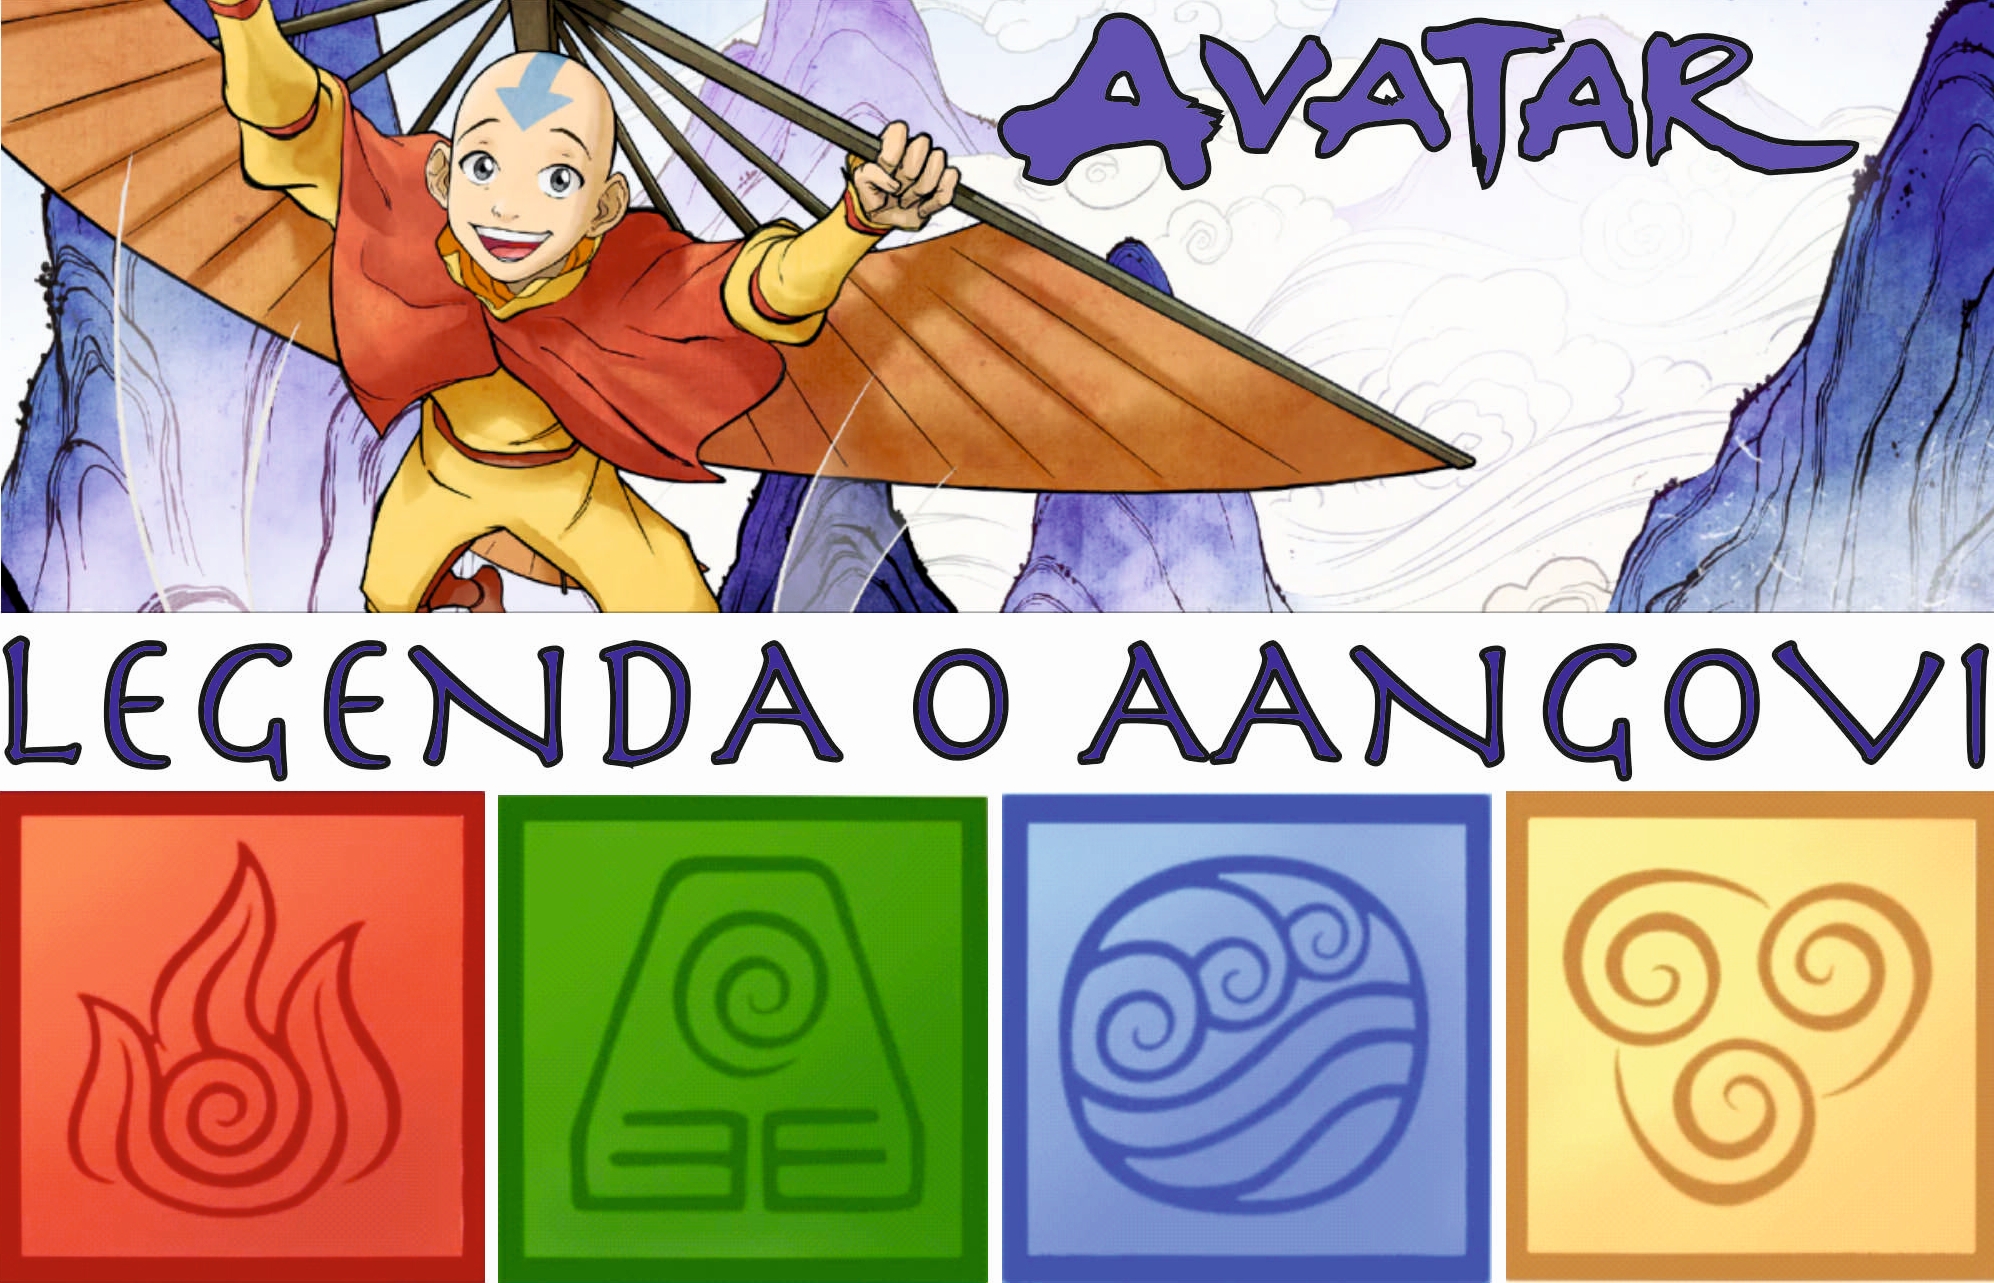 Prorubky červenec - Avatar: Legenda o Aangovi